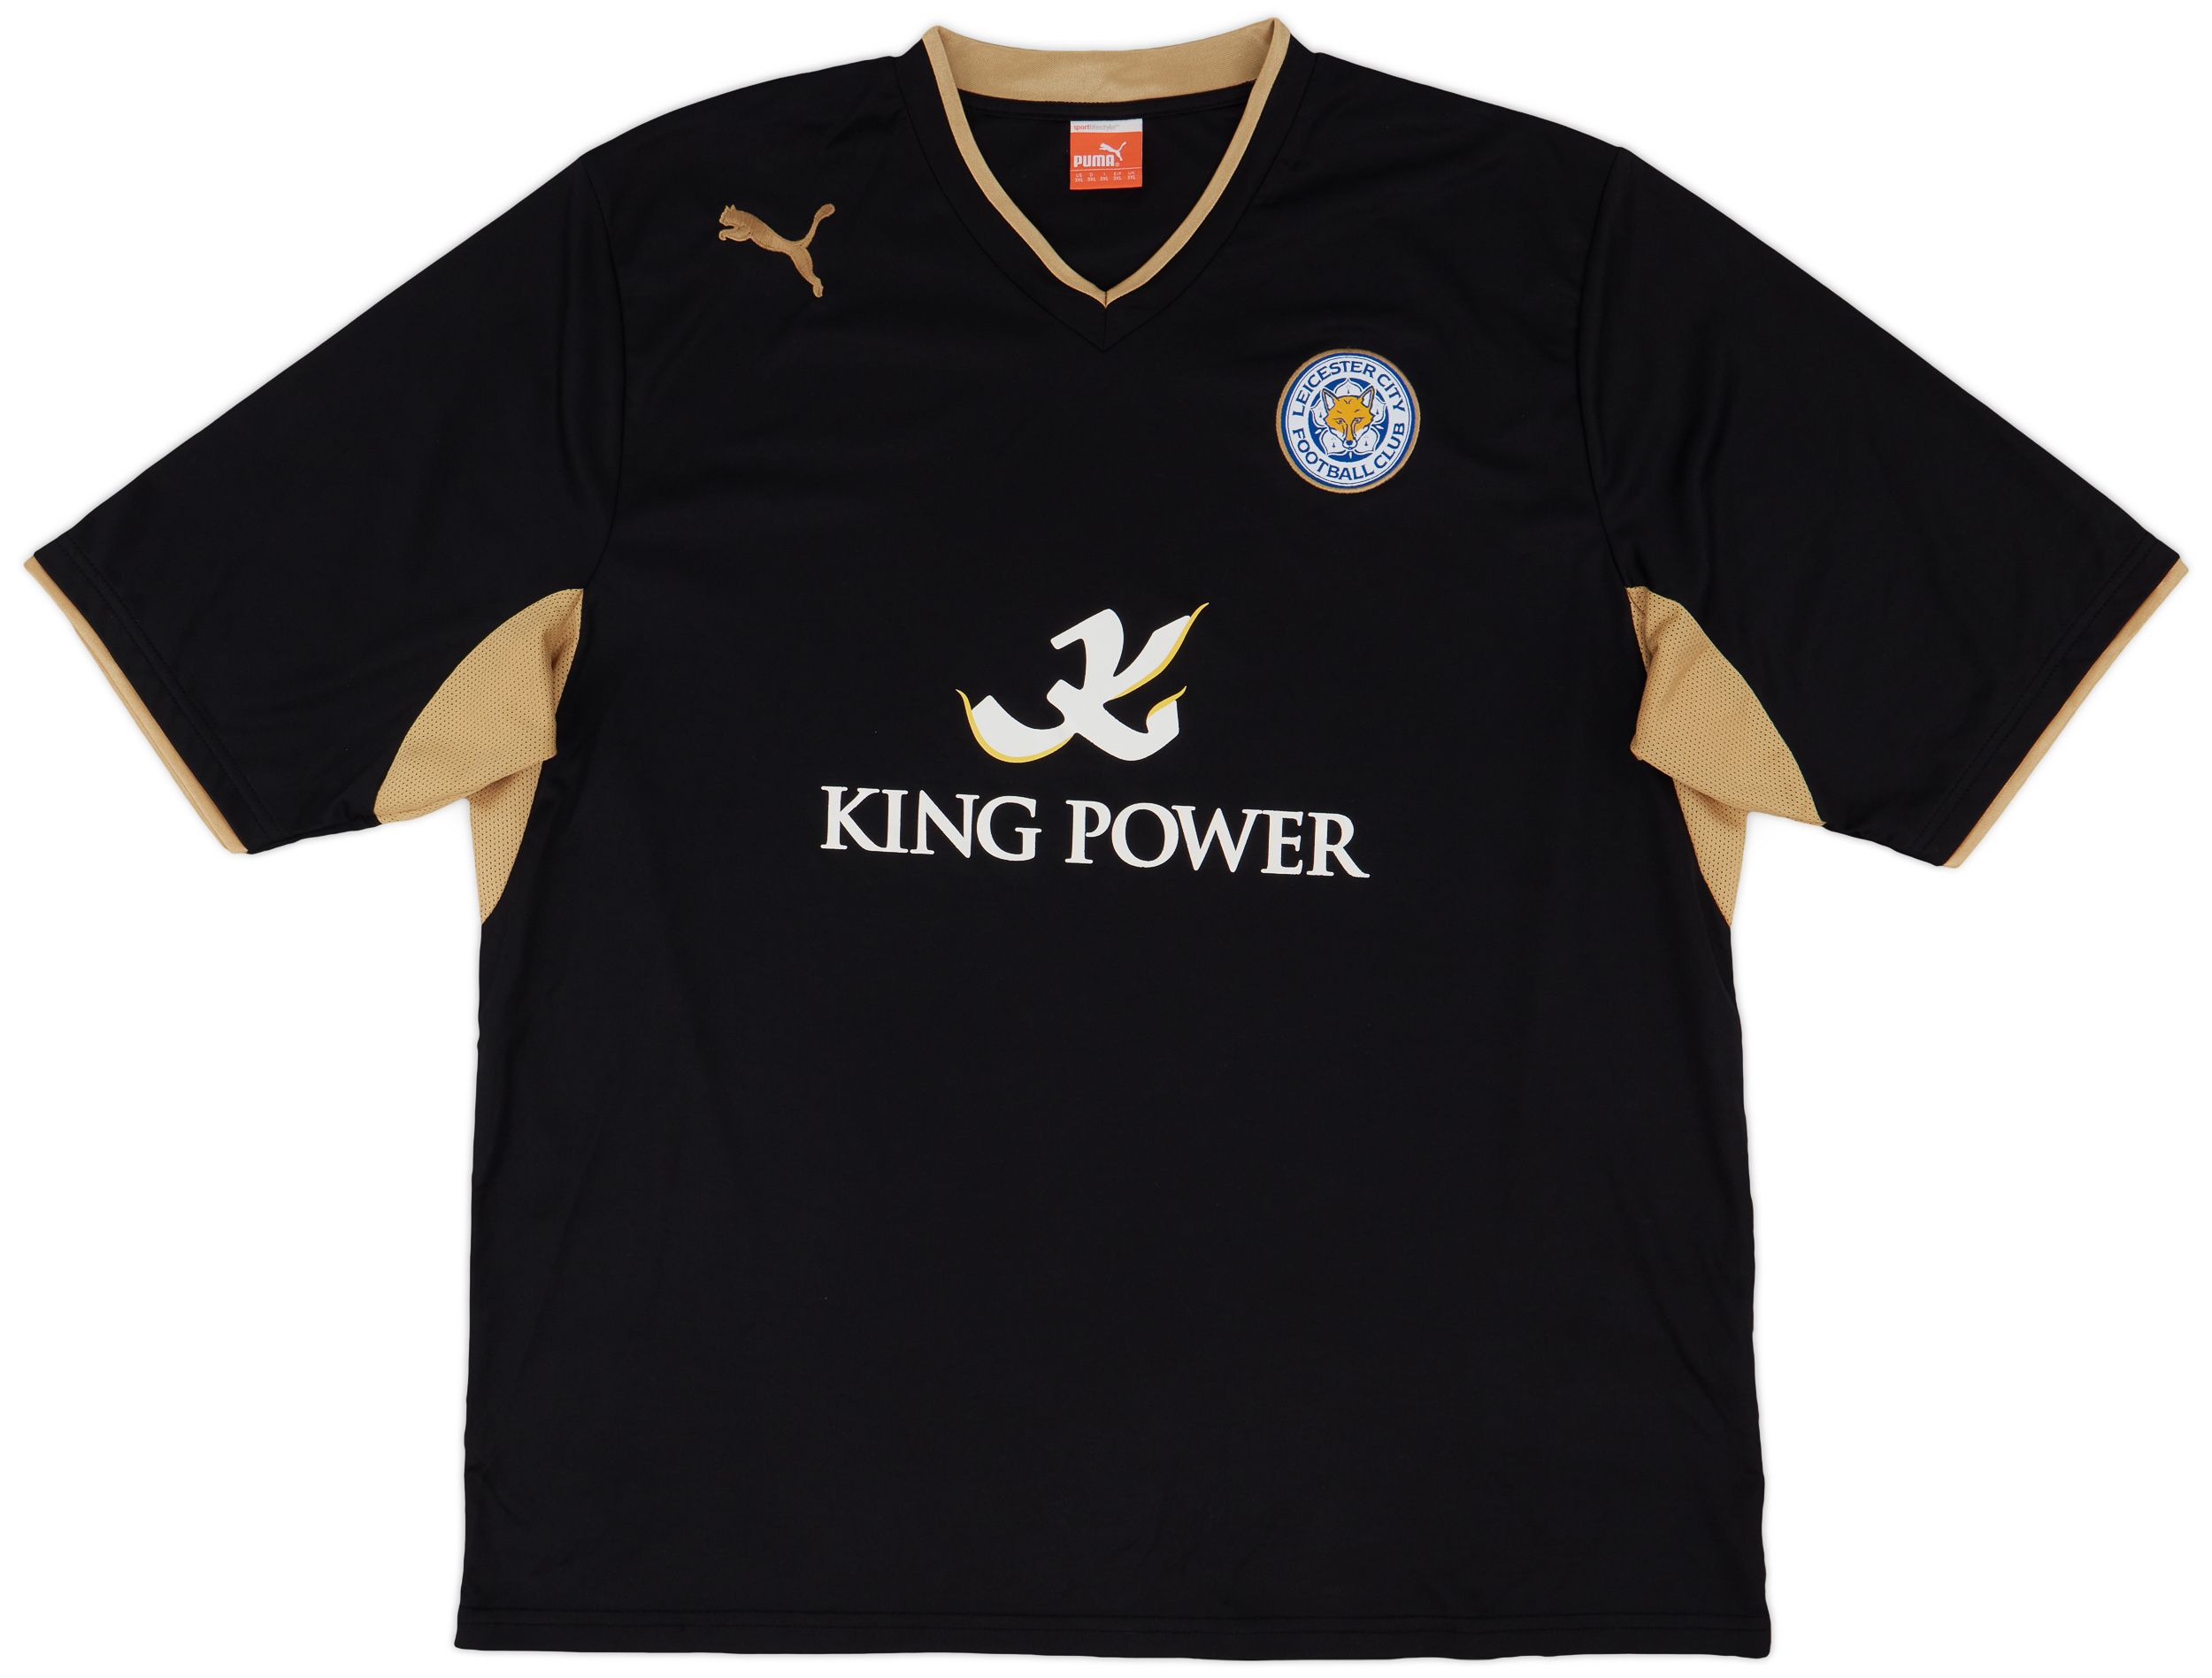 Retro Leicester City Shirt